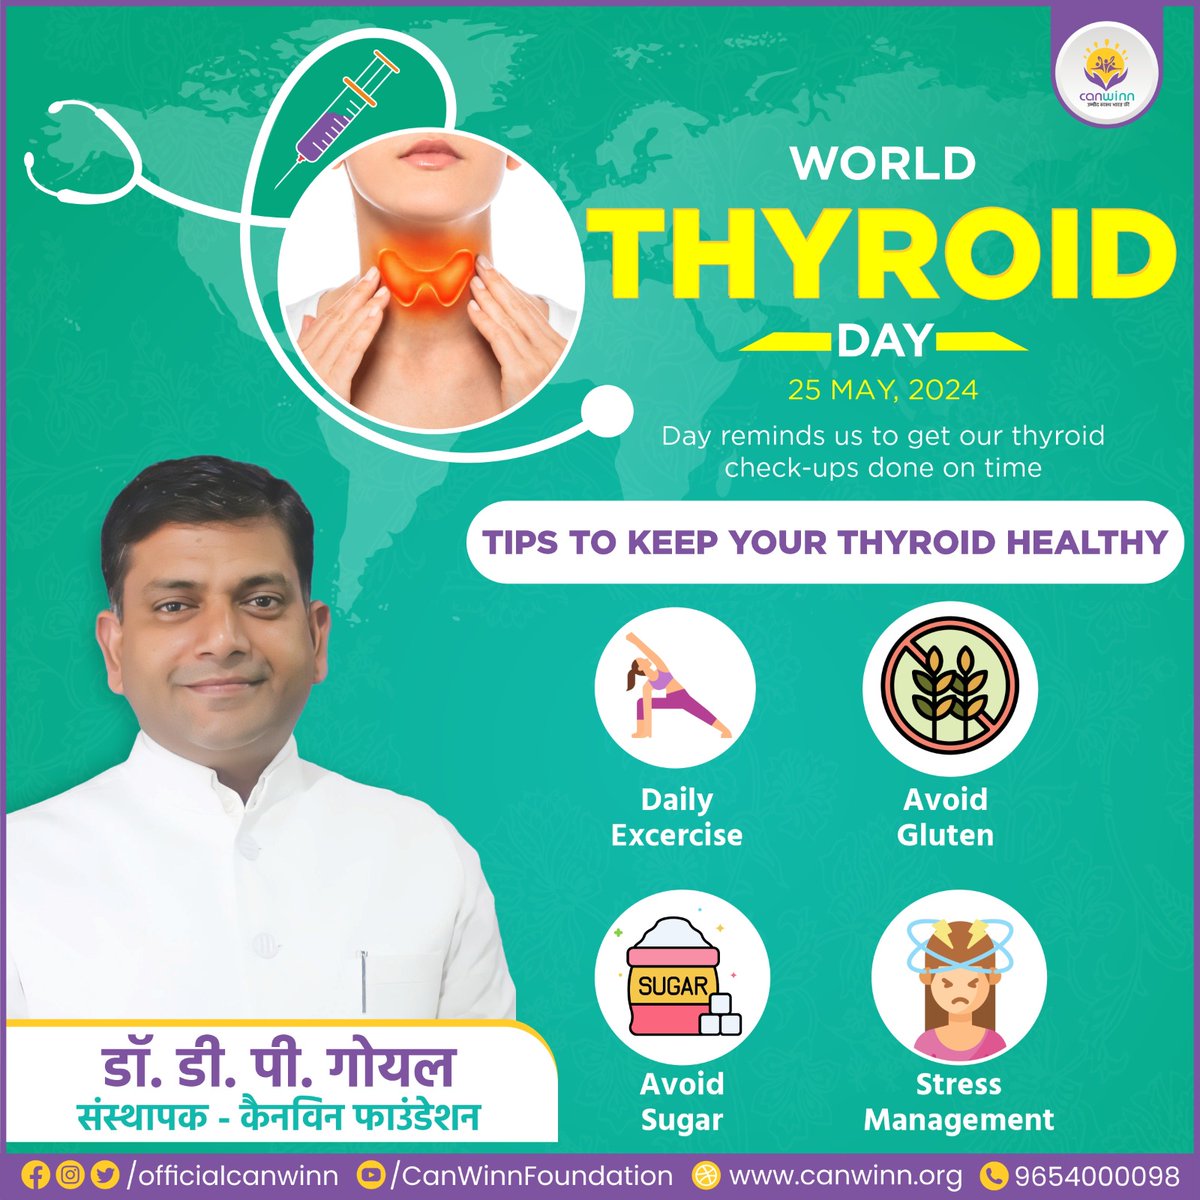 World Thyroid Day पर: Yoga से Thyroid को जड़ से खत्म करें।
.
#worldthyroidday #thyroid #yoga #yogalife #yogabenifits #yogaeveryday #yogadaily #dpgoyal #canwinnfoundation #apna_canwinn_hai_na